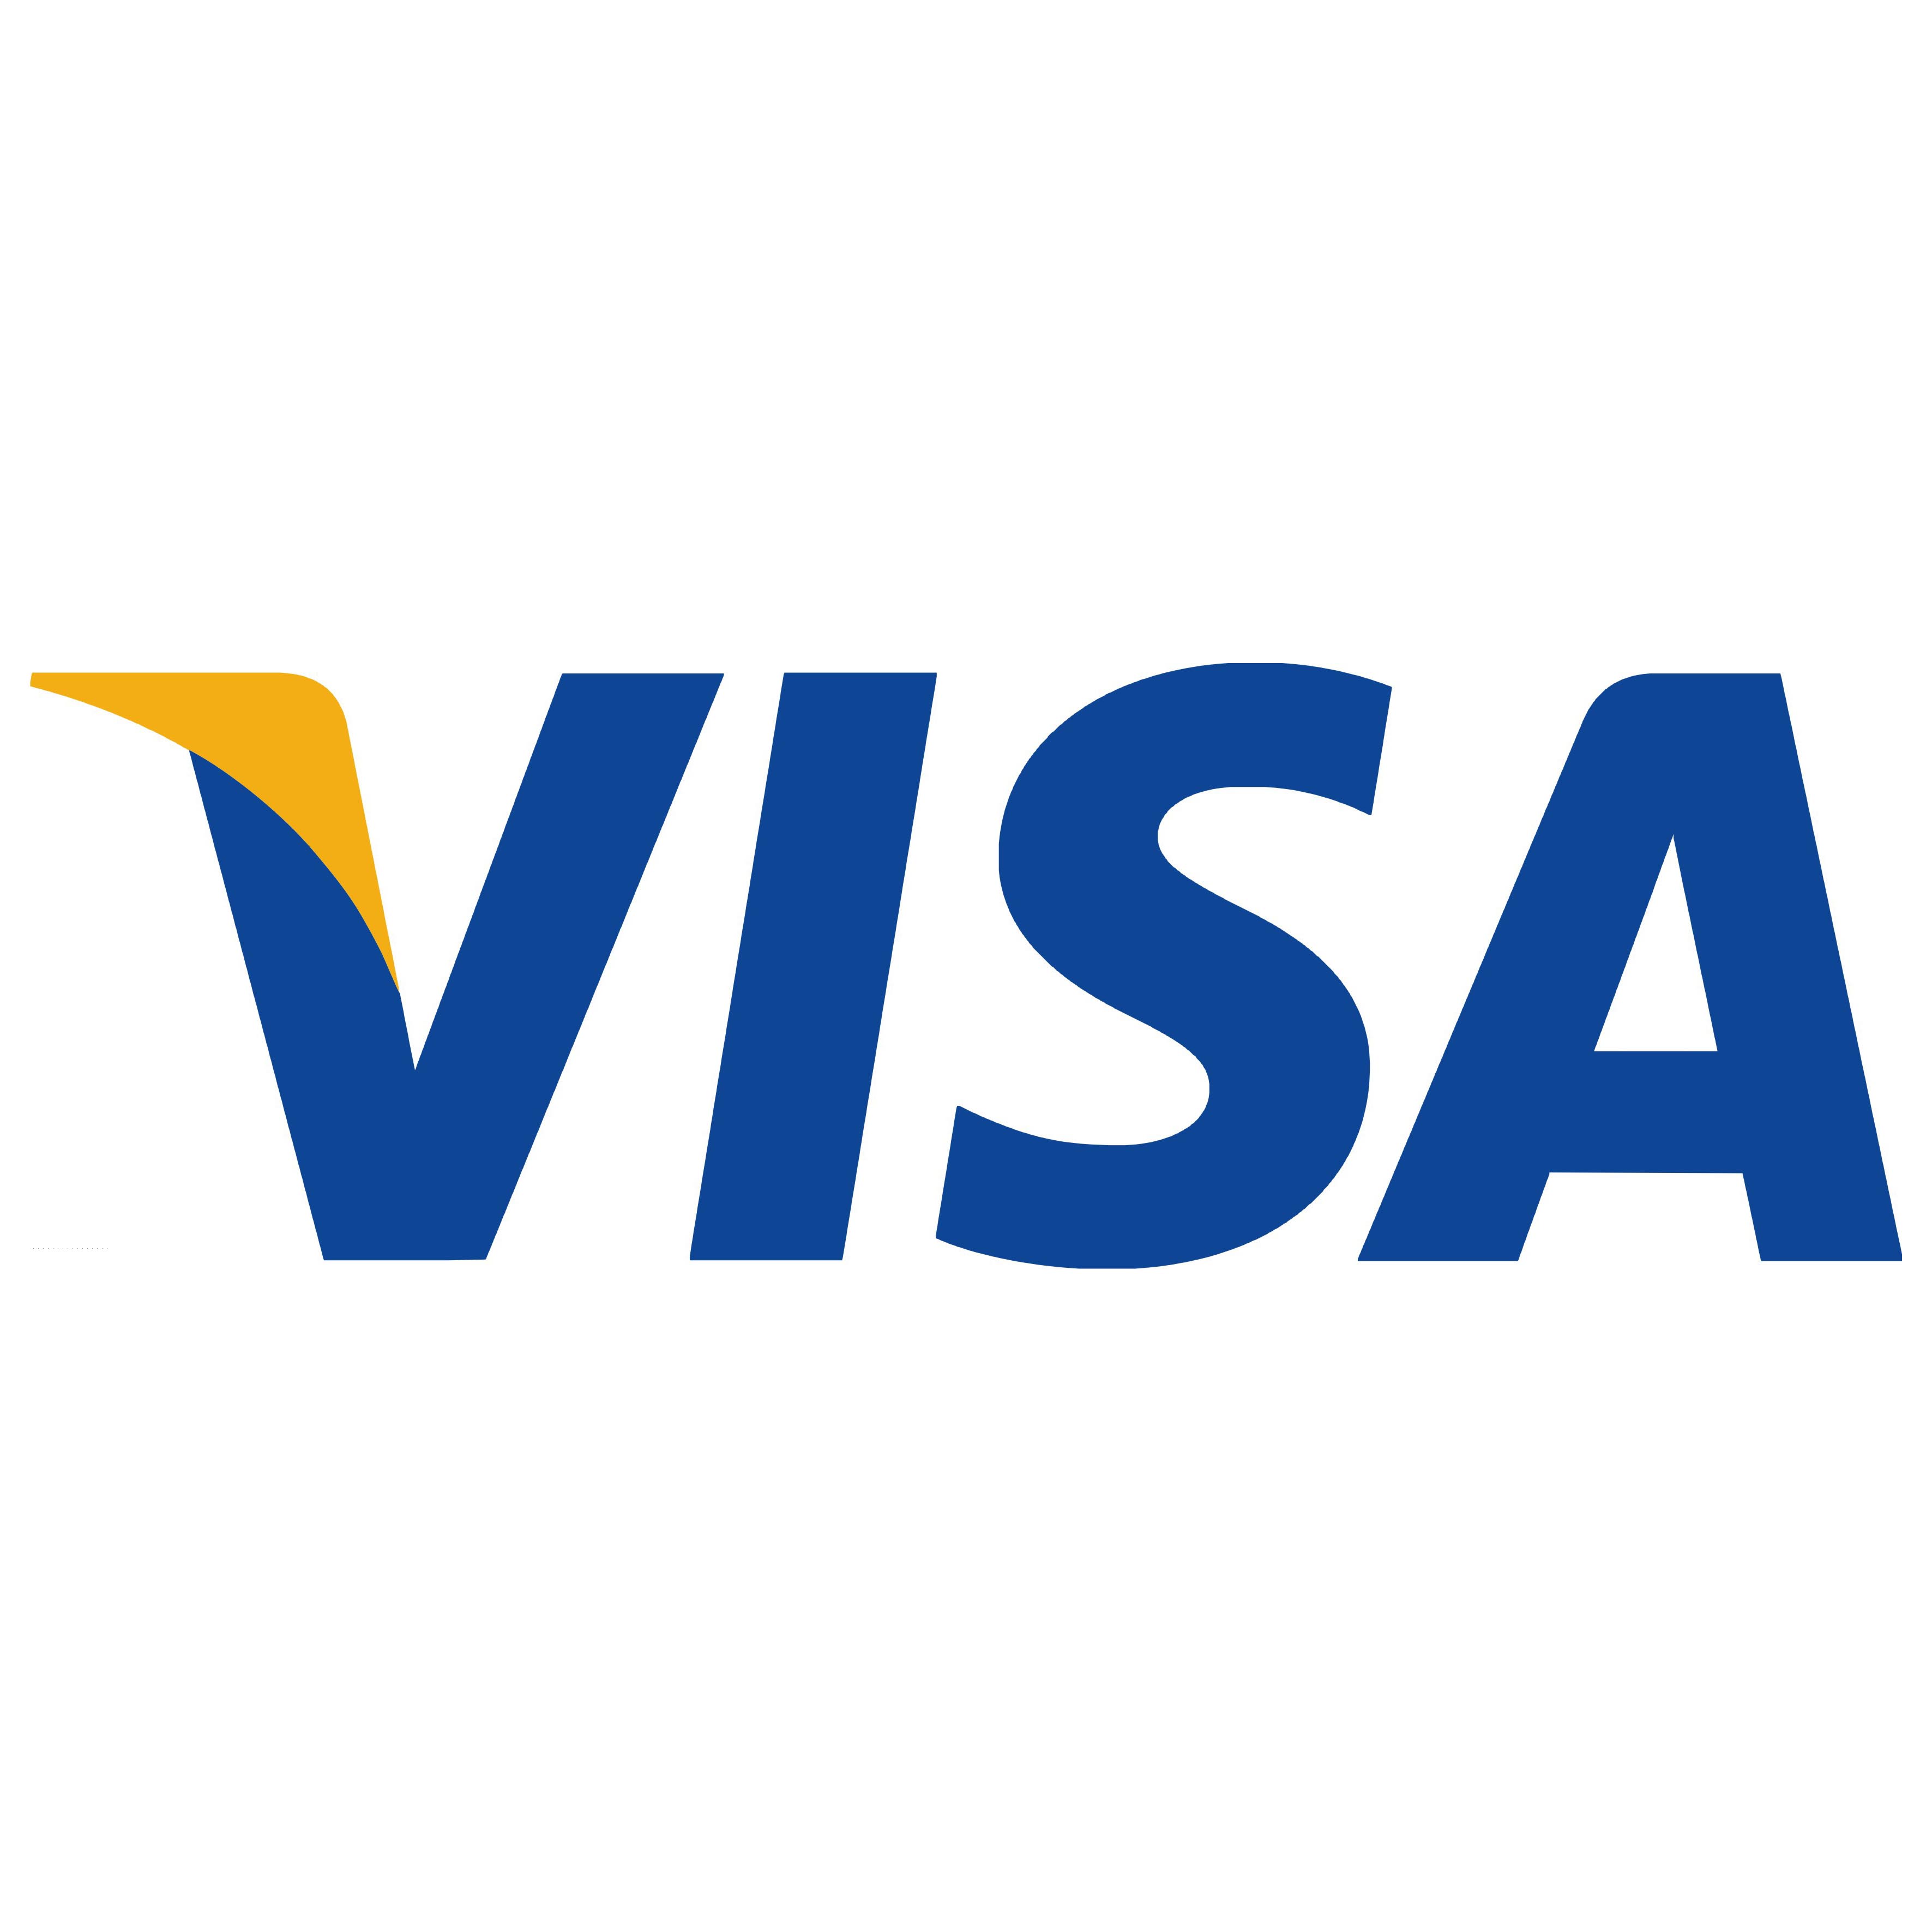 Visa reconoce calidad de servicio de Banesco por cuarto año consecutivo